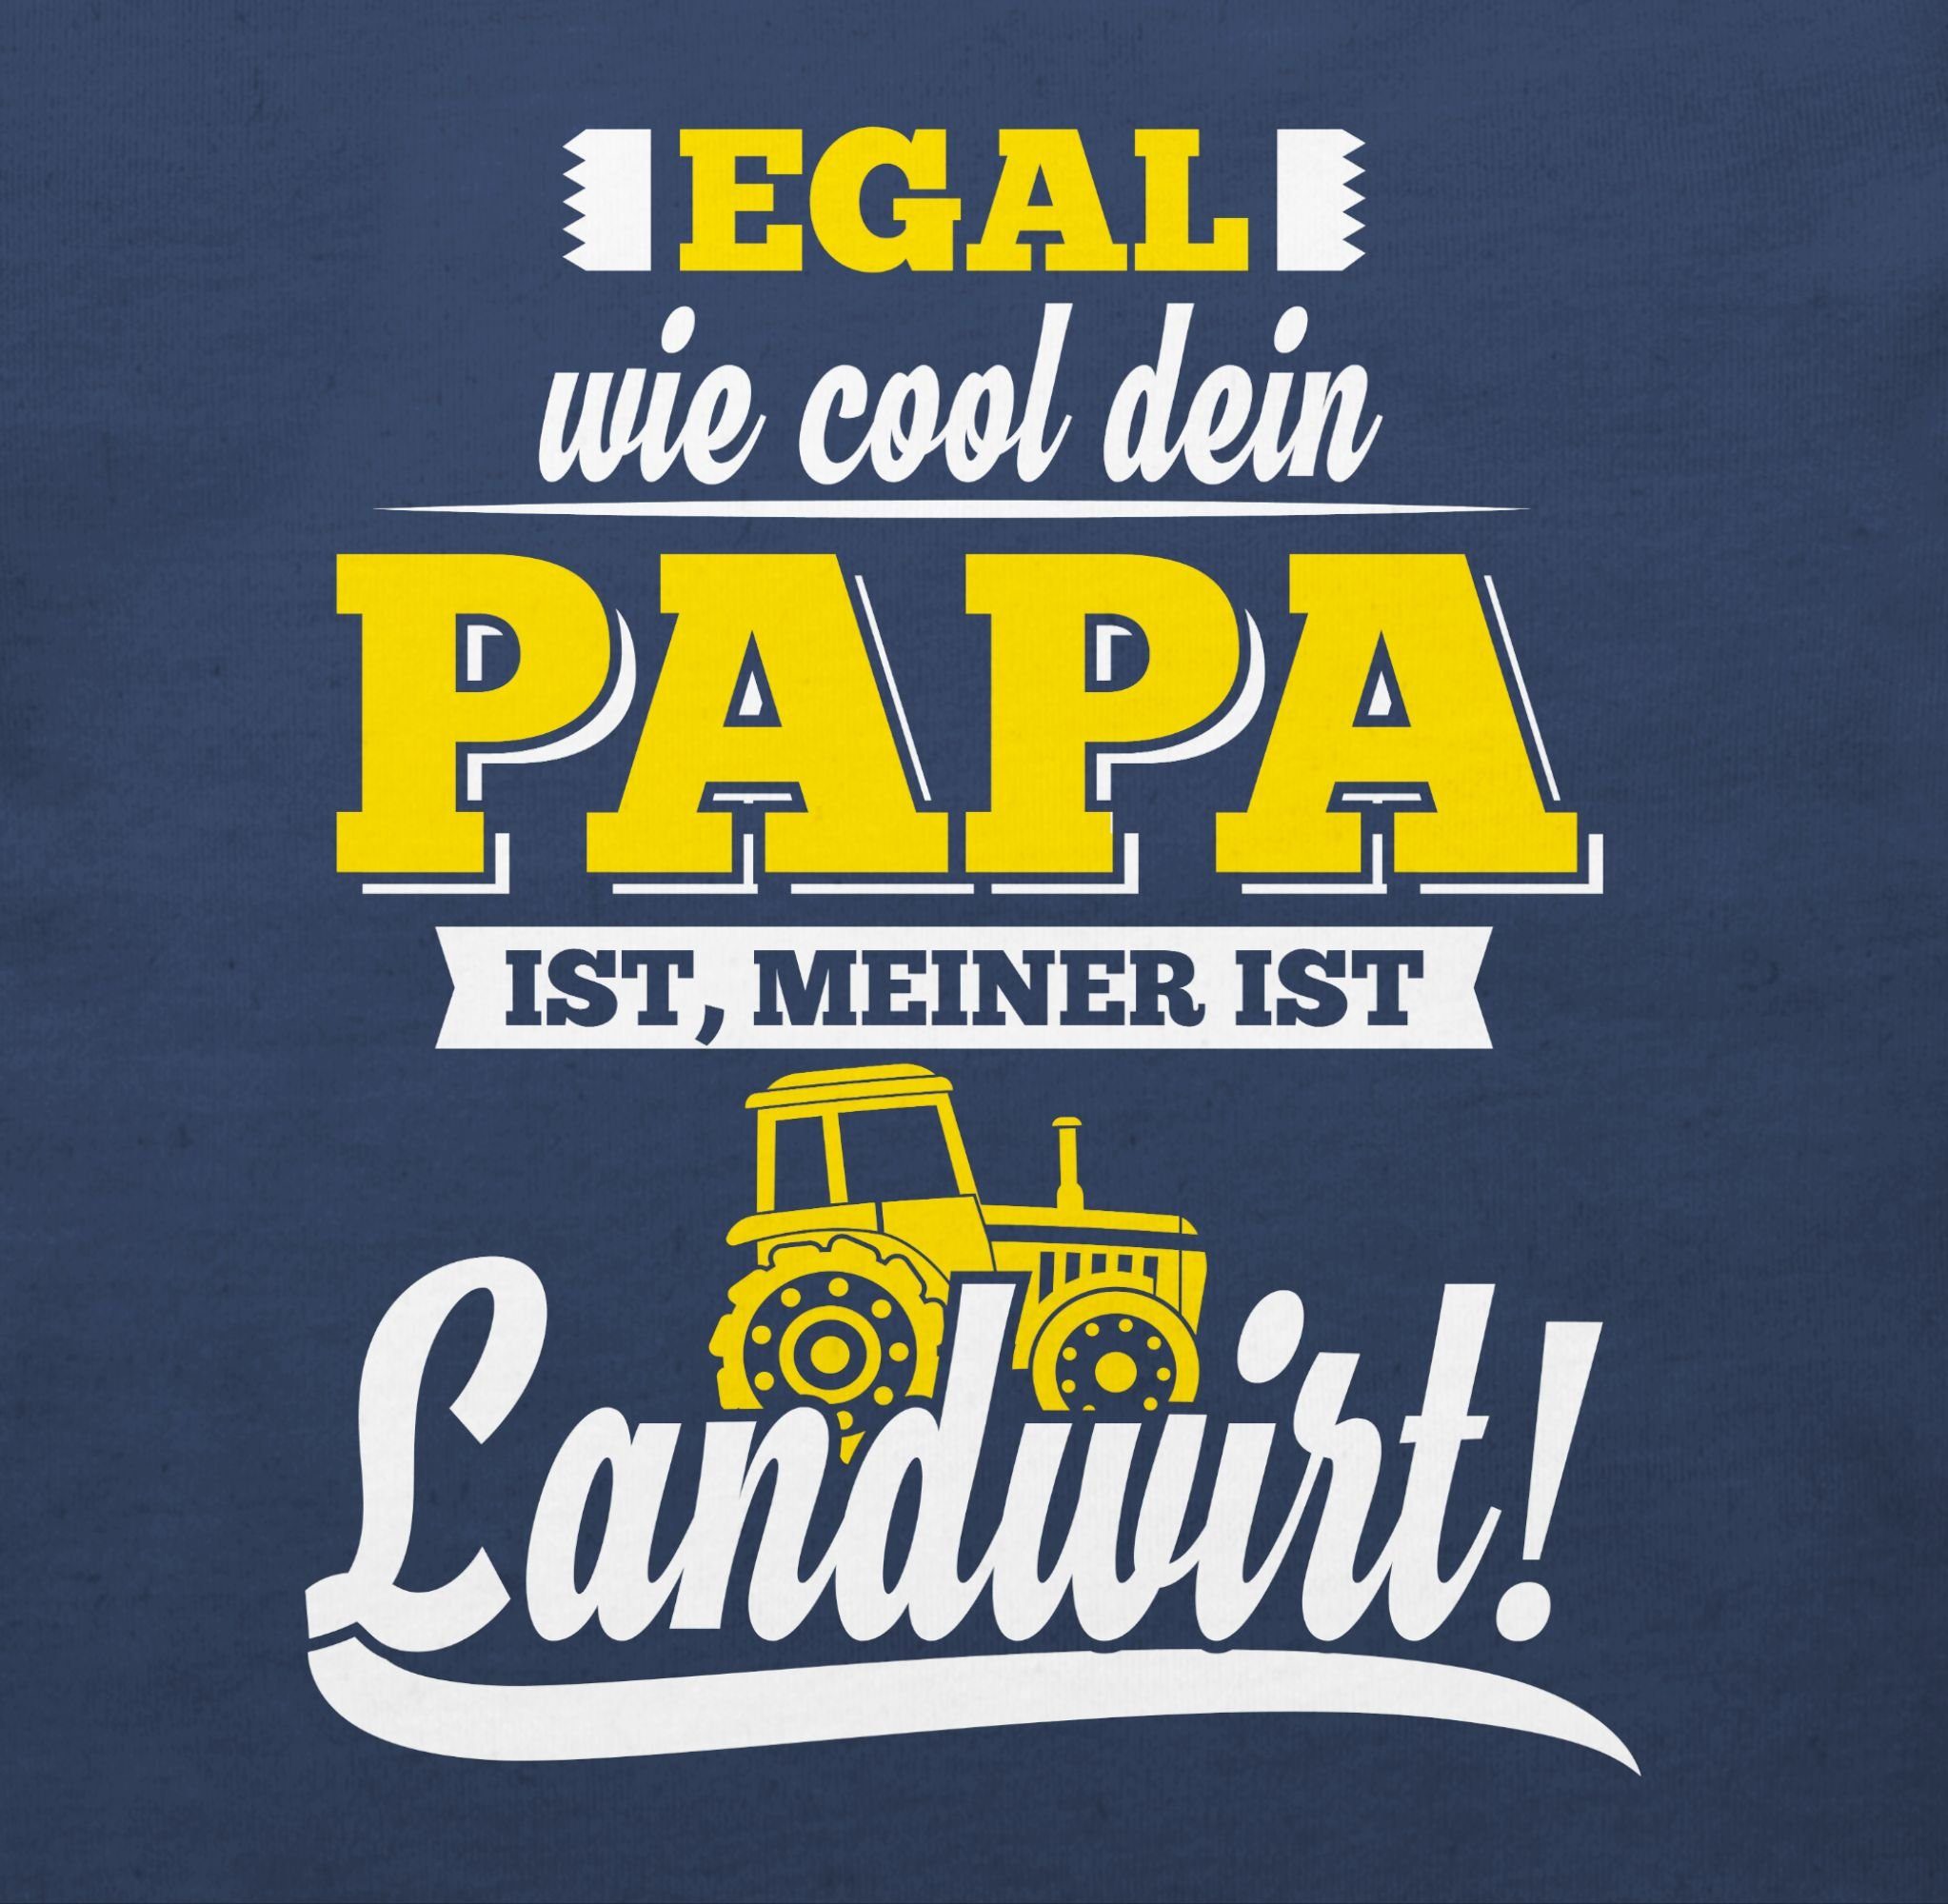 Landwirt ist Sprüche Cool Papa meiner 1 wie Blau Navy dein Egal Baby Shirtracer T-Shirt